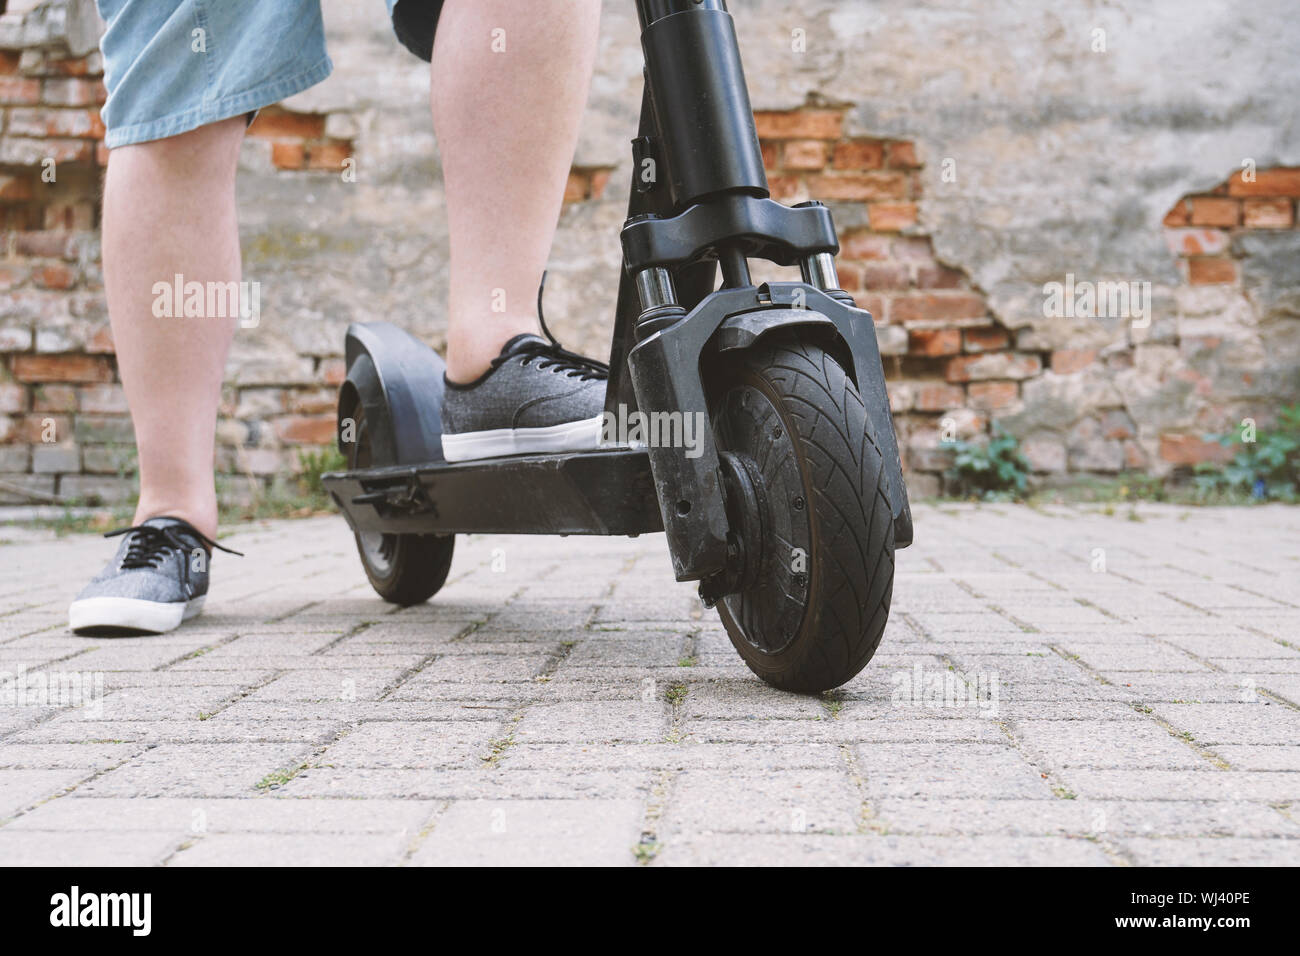 Le gambe di un irriconoscibile uomo che indossa pantaloni corti con electric kick scooter o e-scooter - e-mobility o micro-mobilità hipster tendenza allo stile di vita Foto Stock